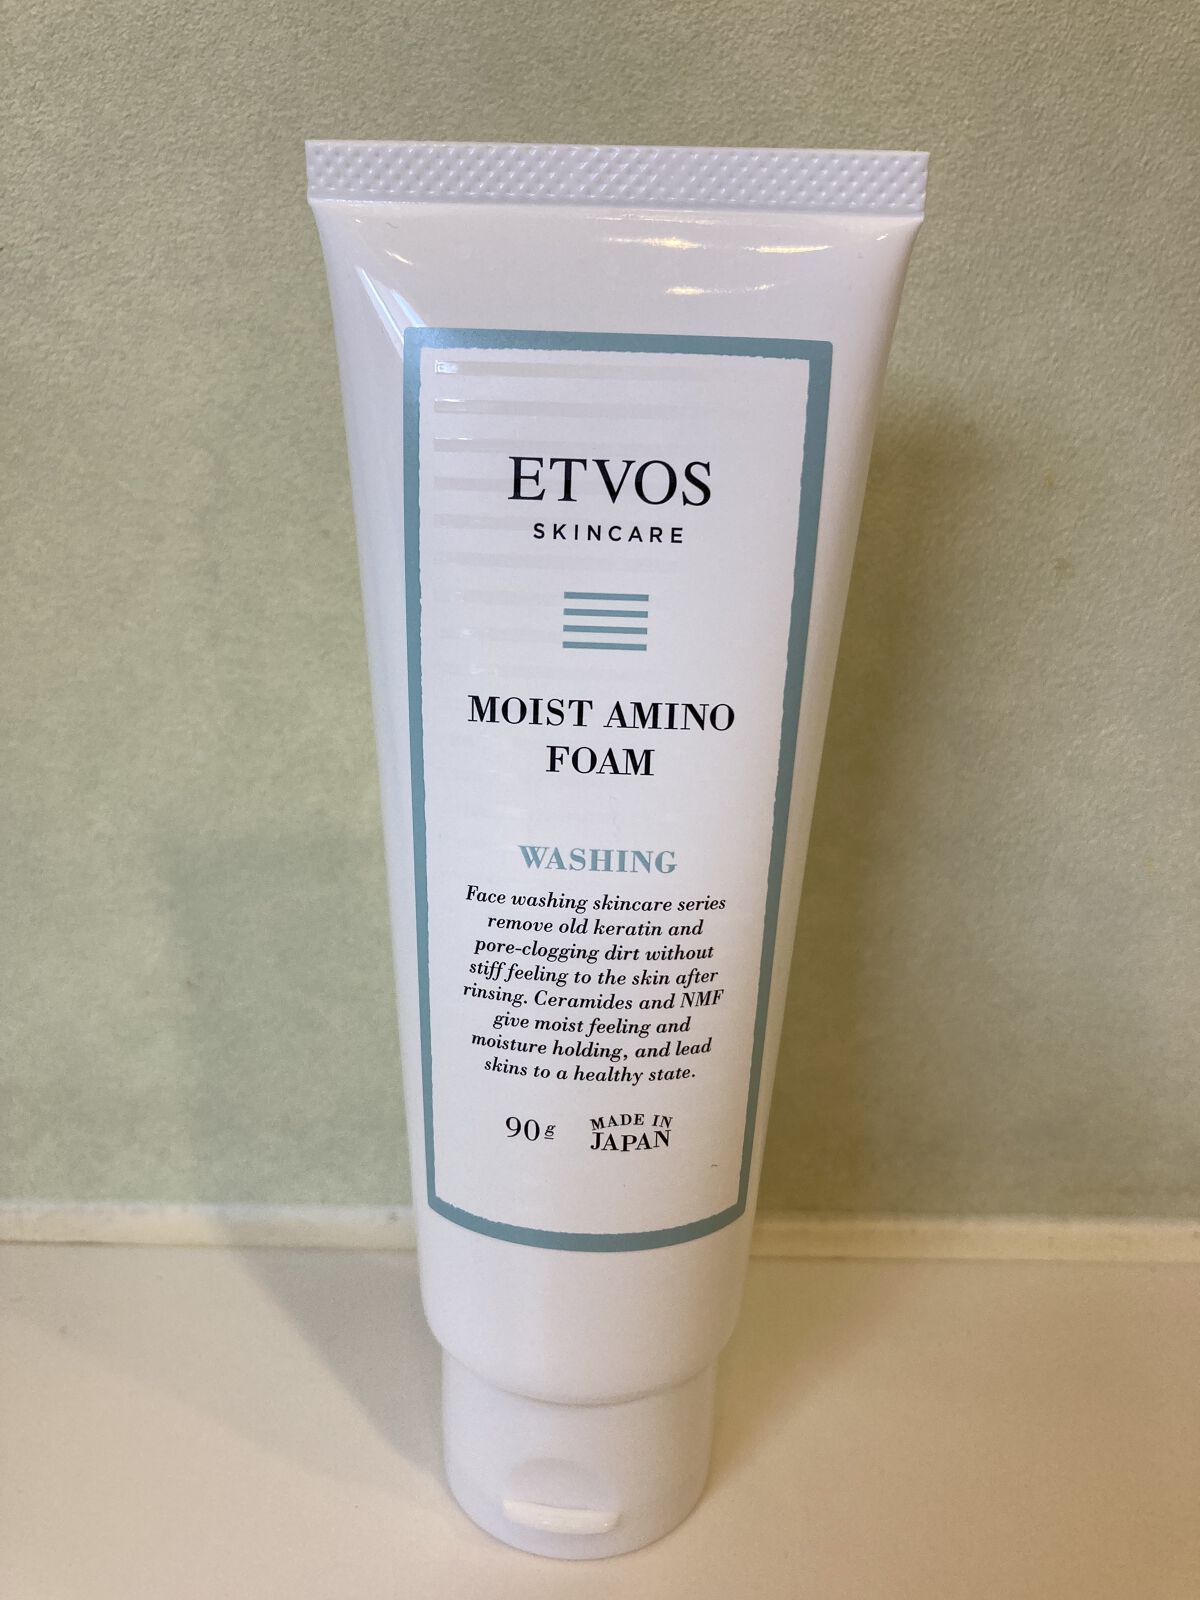 885円 豪華で新しい ETVOS エトヴォス モイストアミノフォーム 90g 洗顔フォーム スキンケア セラミド アミノ酸 保湿 洗顔 送料無料